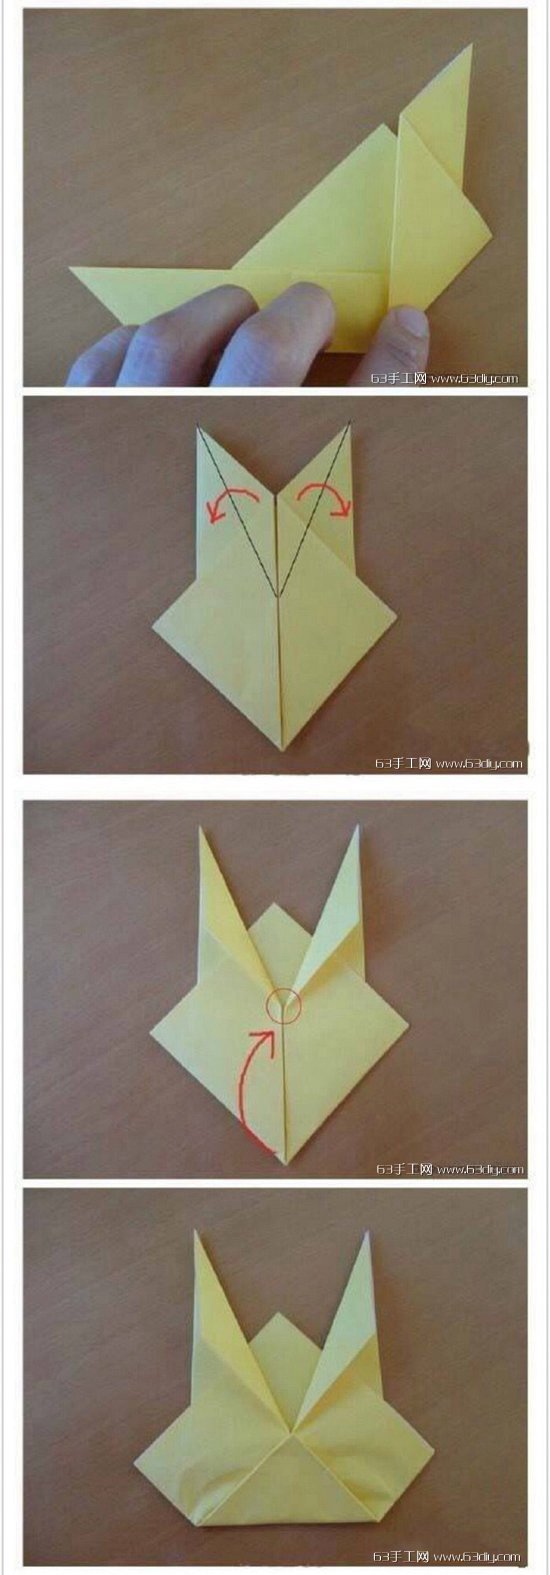 皮卡丘立体折纸教程图片